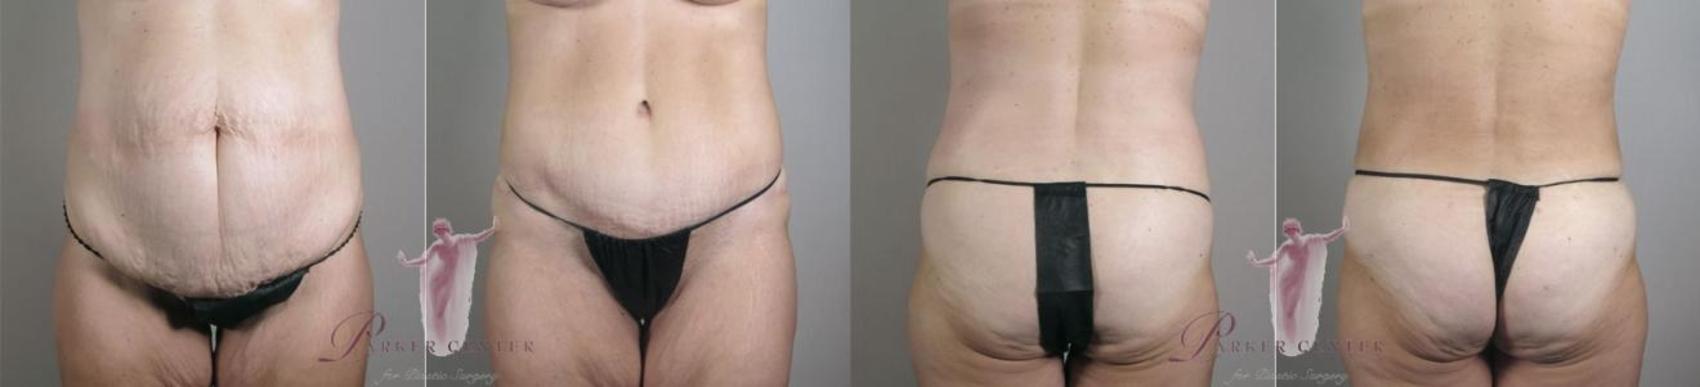 Liposuction Case 1151 Before & After Front | Paramus, NJ | Parker Center for Plastic Surgery